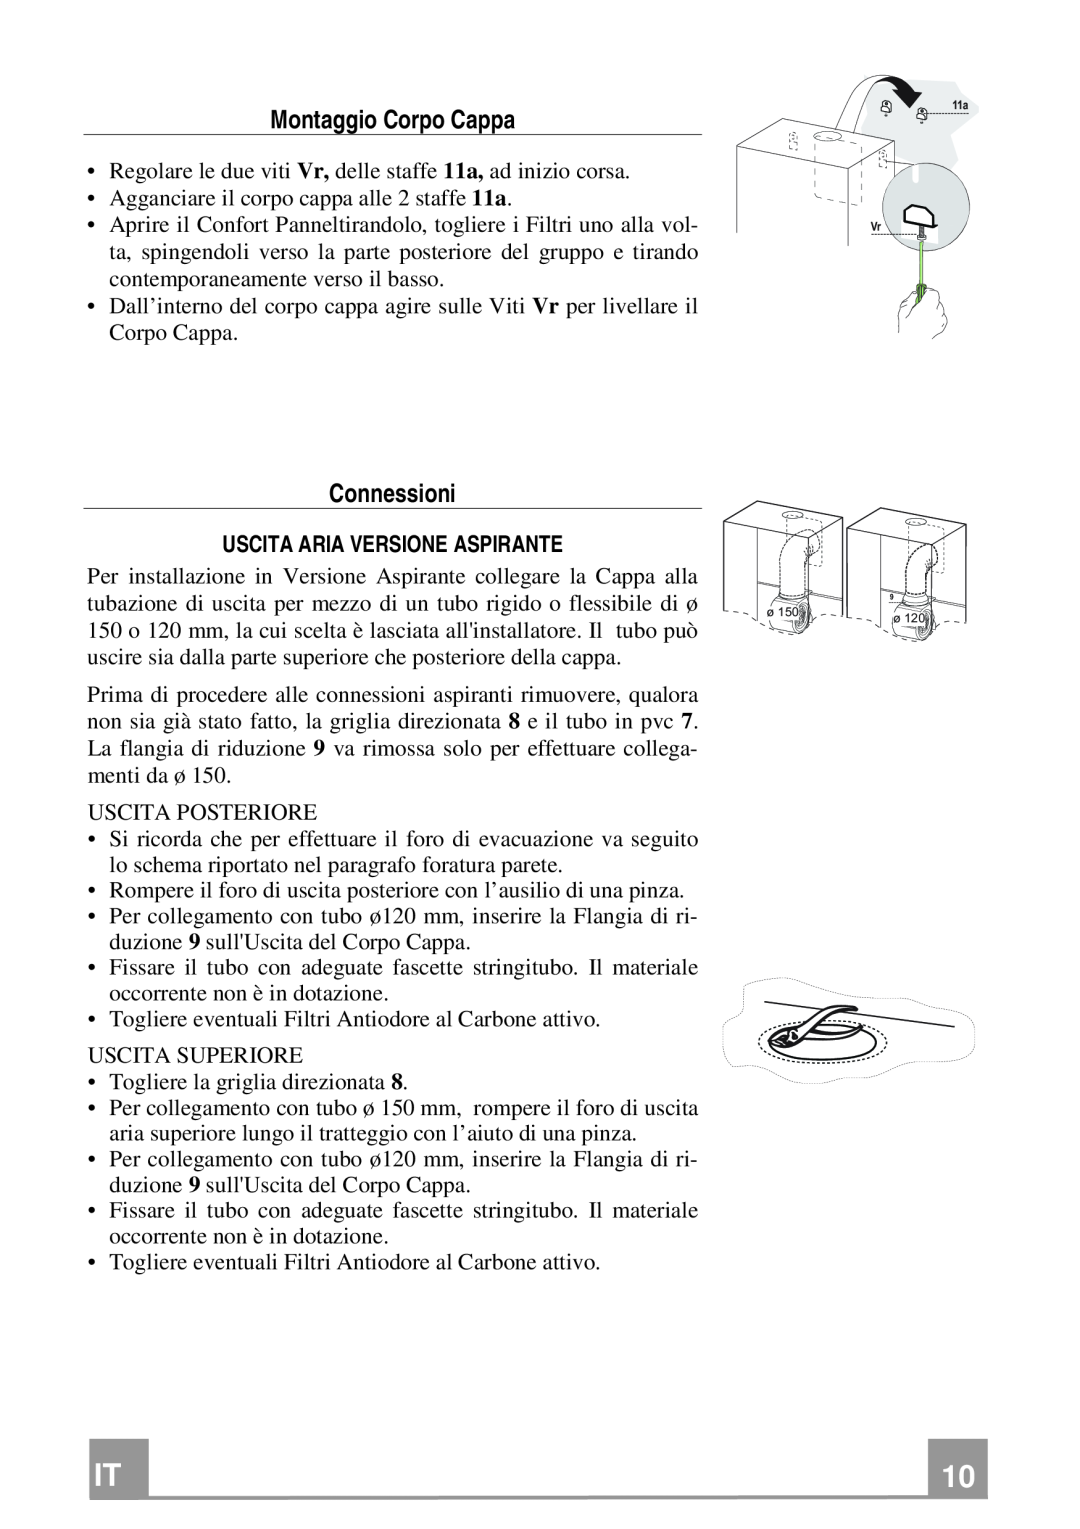 Franke Consumer Products FPL 606, FPL 906 manual Montaggio Corpo Cappa, Connessioni, Uscita Aria Versione Aspirante 